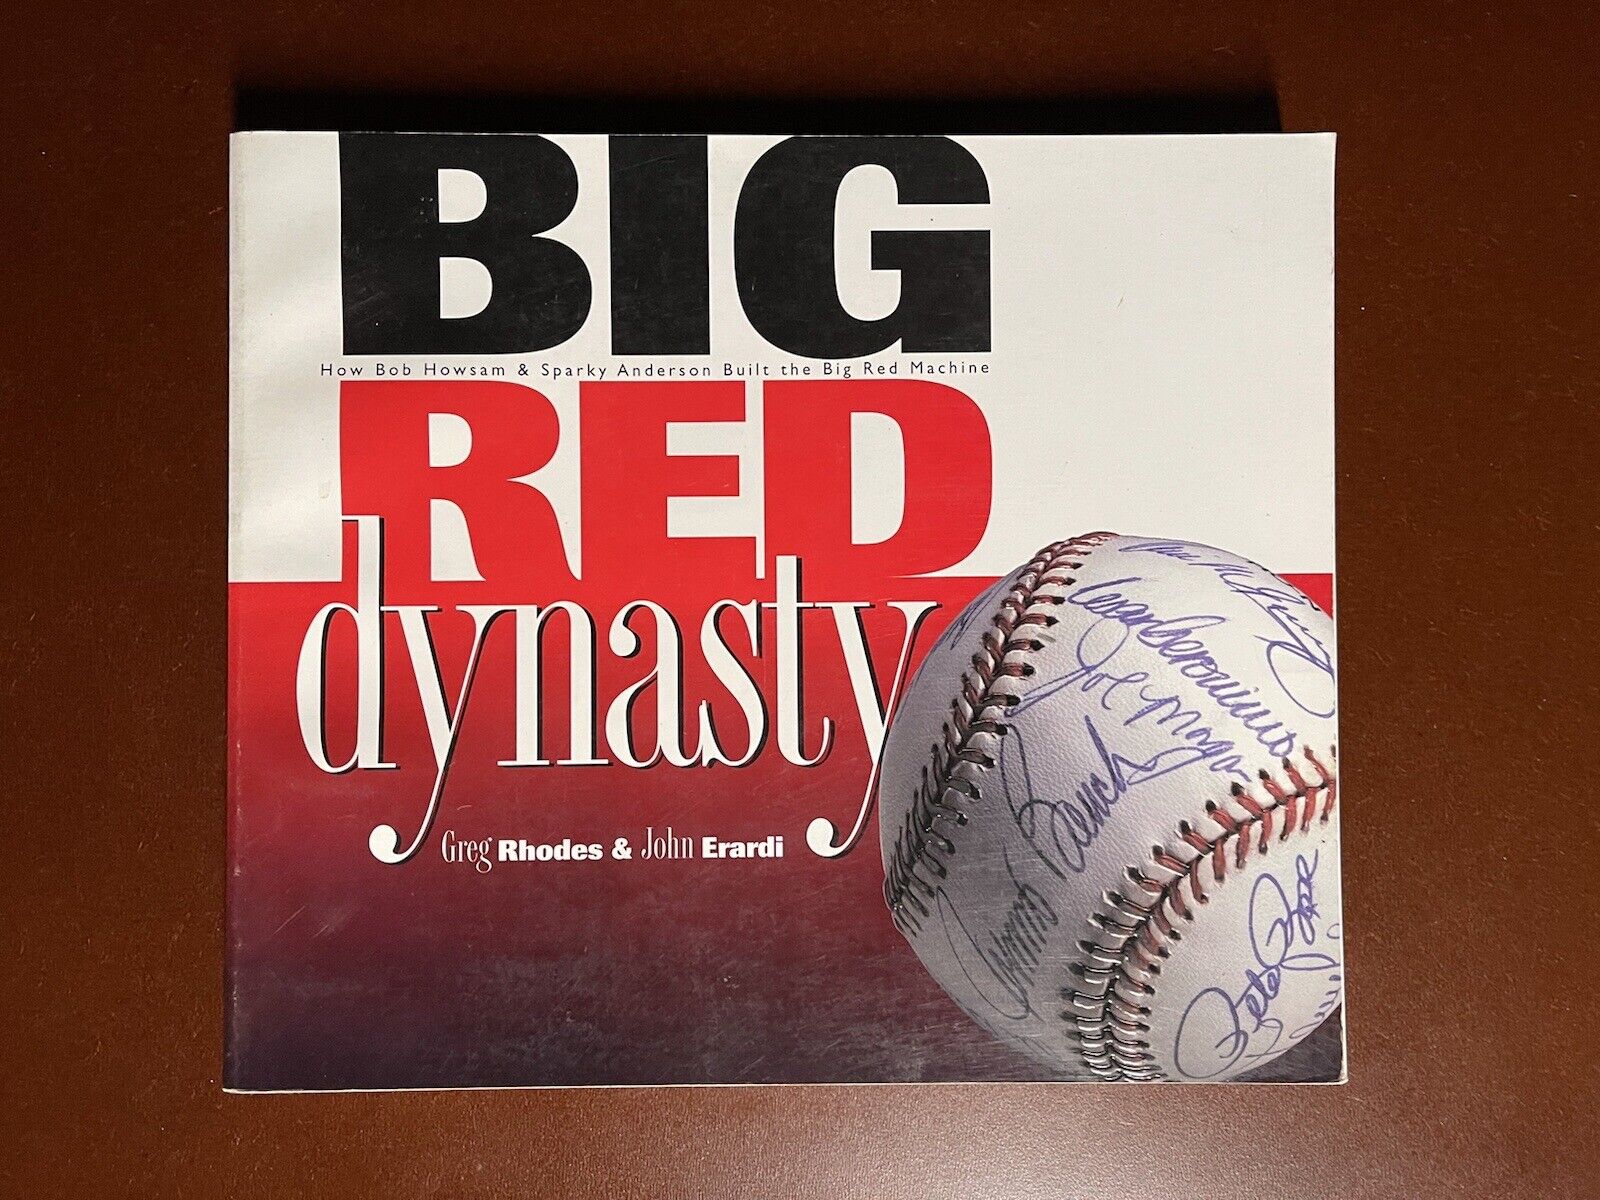 BIg Red Dynasty by Greg Rhodes and John Erardi Cincinnati Reds 1997